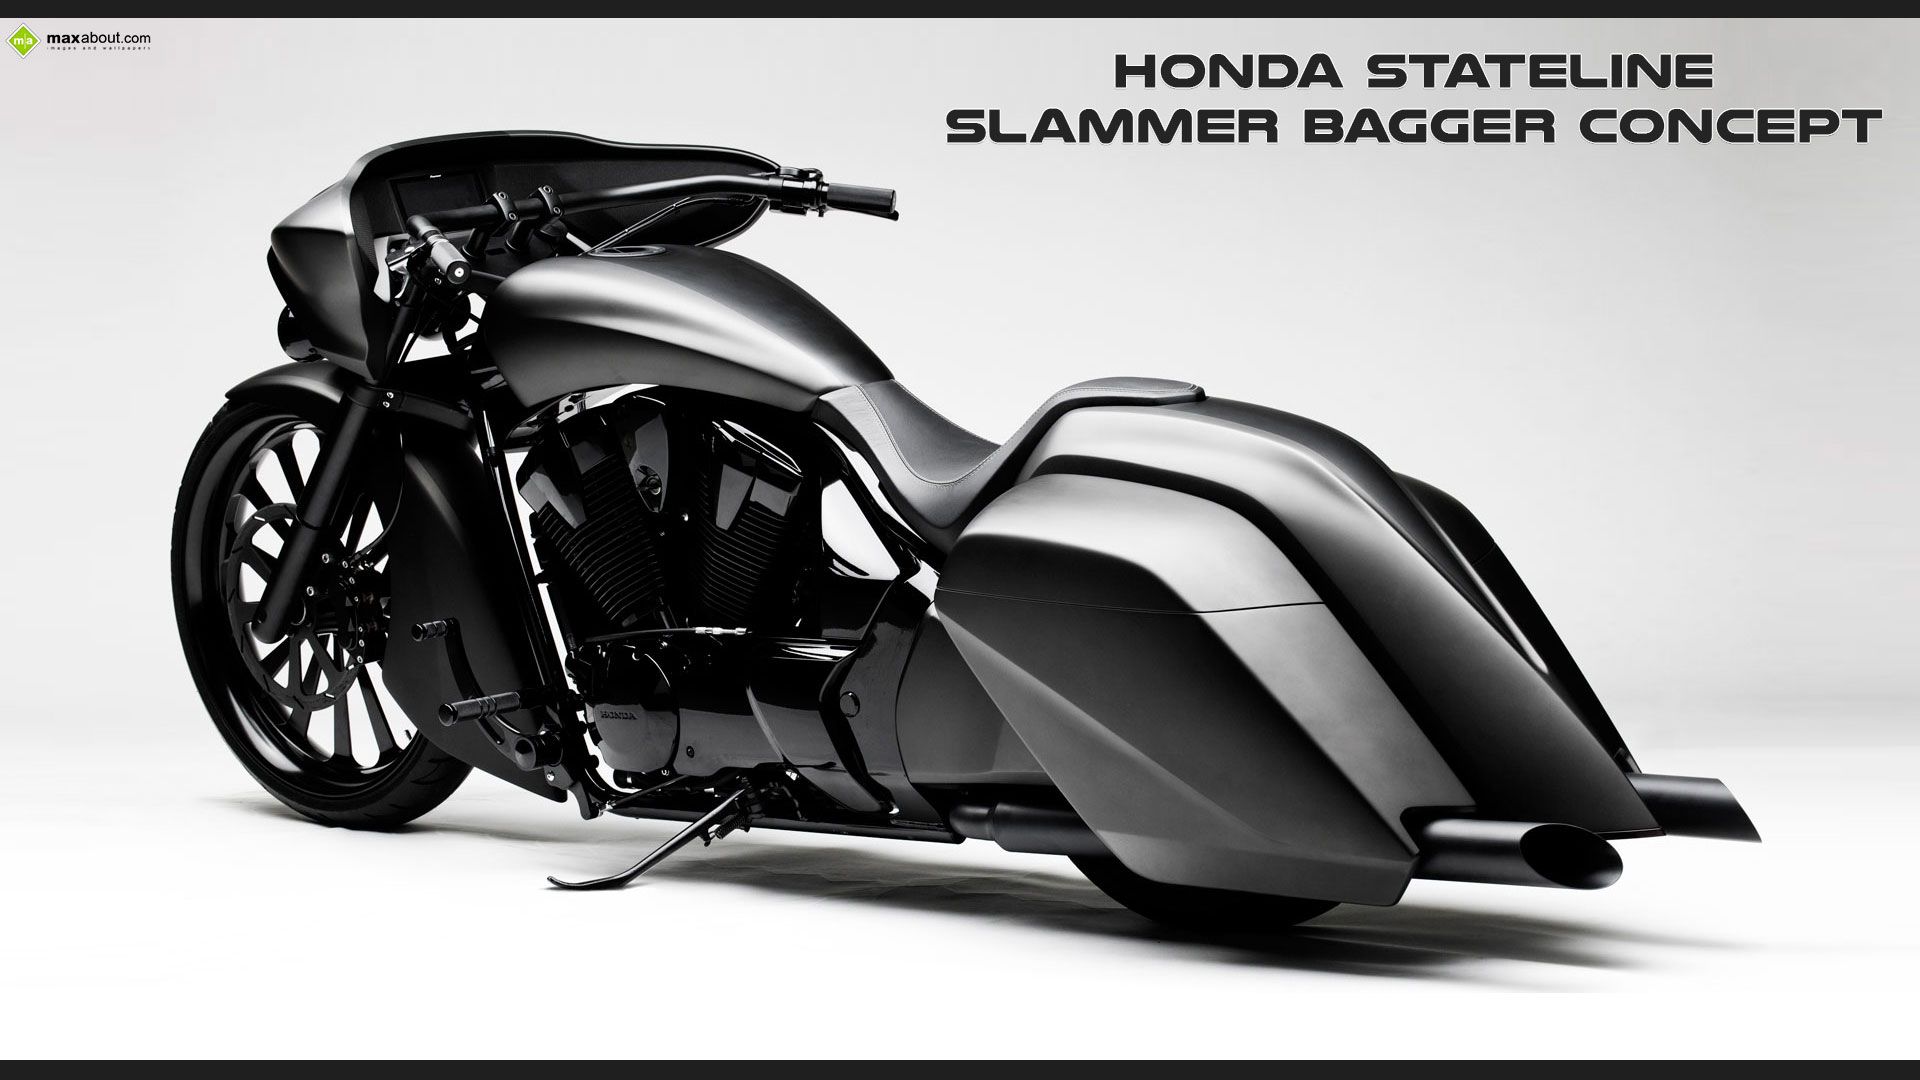 Honda Stateline Slammer Bagger Concept 'Rear View'